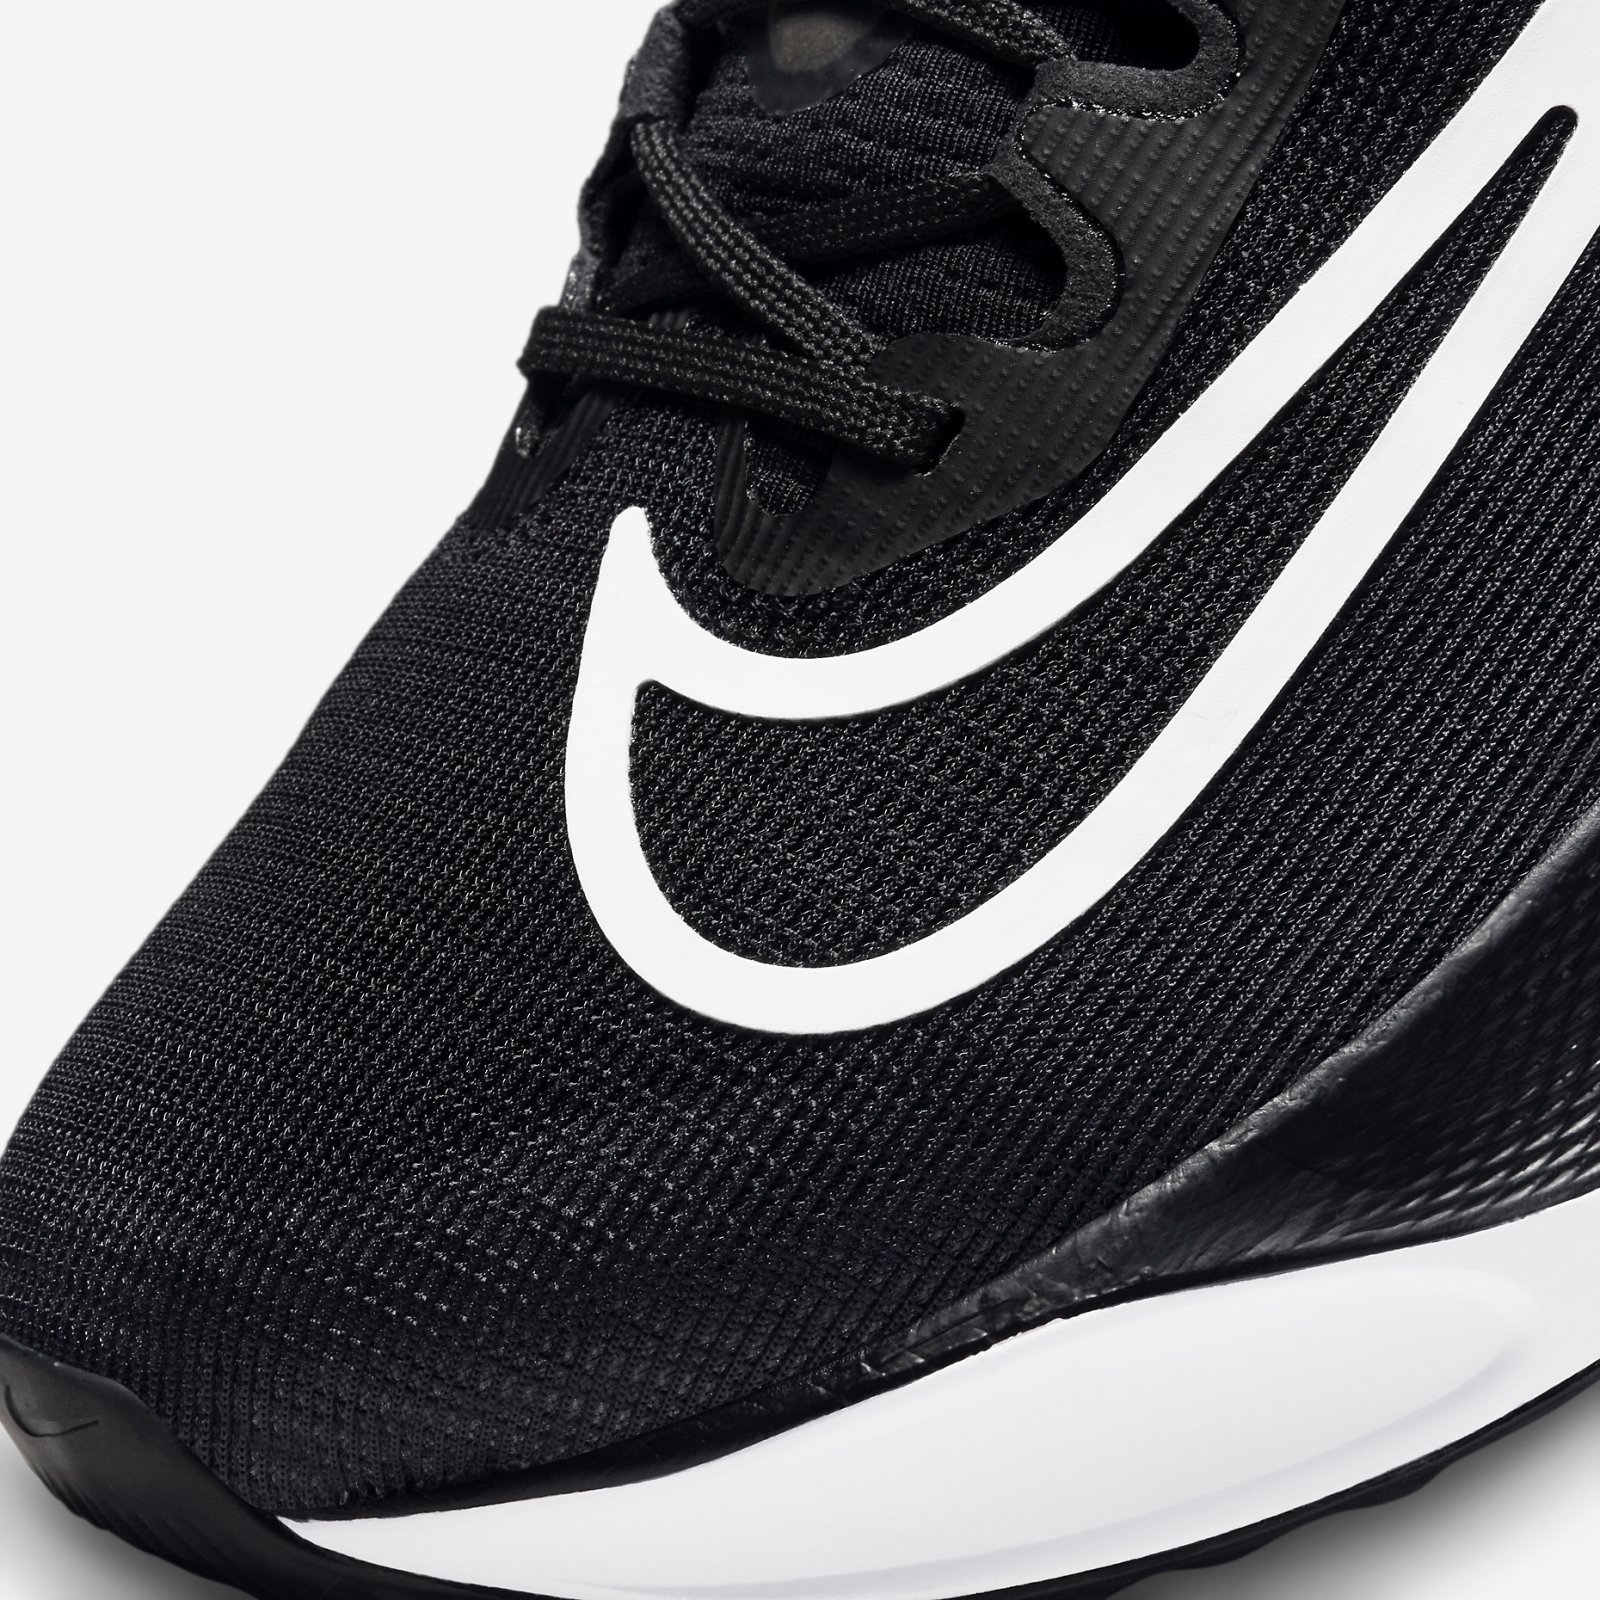 （最新詳細レビュー）ナイキズームフライ5の機能・特徴紹介/Review of Nike Zoom Fly 5 | ランブロ / My Running Blog